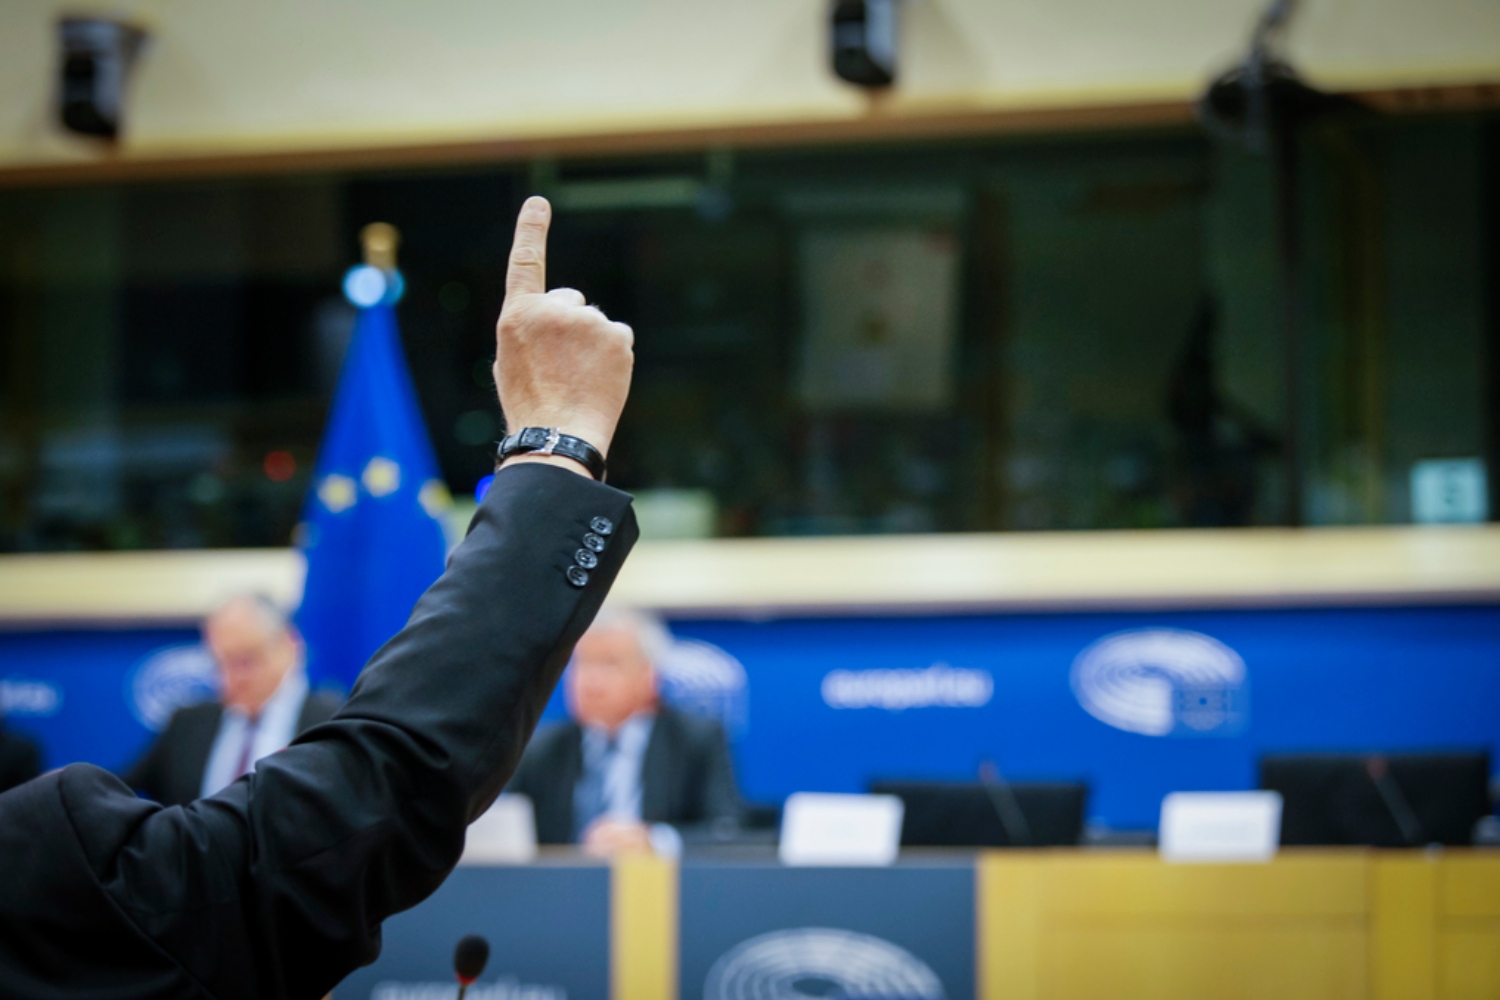 Los eurodiputados debatirán y votarán sobre la posición del Parlamento respecto a la reforma de la legislación farmacéutica en la sesión plenaria de abril. Foto: PARLAMENTO EUROPEO.